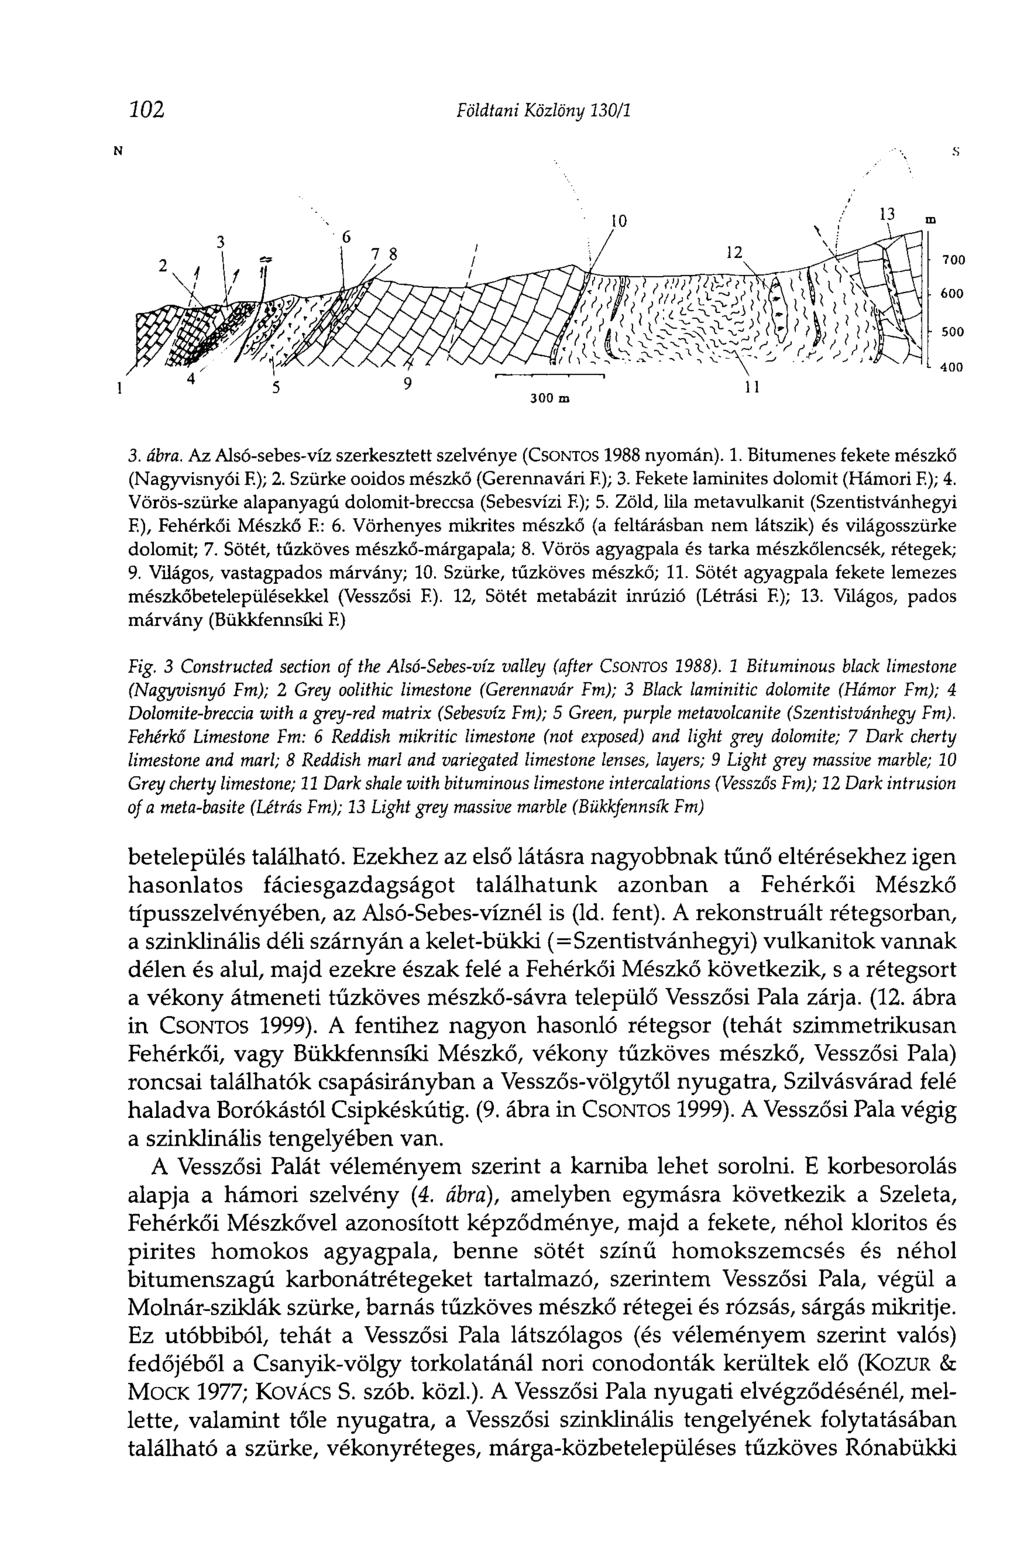 3. ábra. Az Alsó-sebes-víz szerkesztett szelvénye (CSONTOS 1988 nyomán). 1. Bitumenes fekete mészkő (Nagyvisnyói F.); 2. Szürke ooidos mészkő (Gerennavári F.); 3. Fekete laminites dolomit (Hámori F.